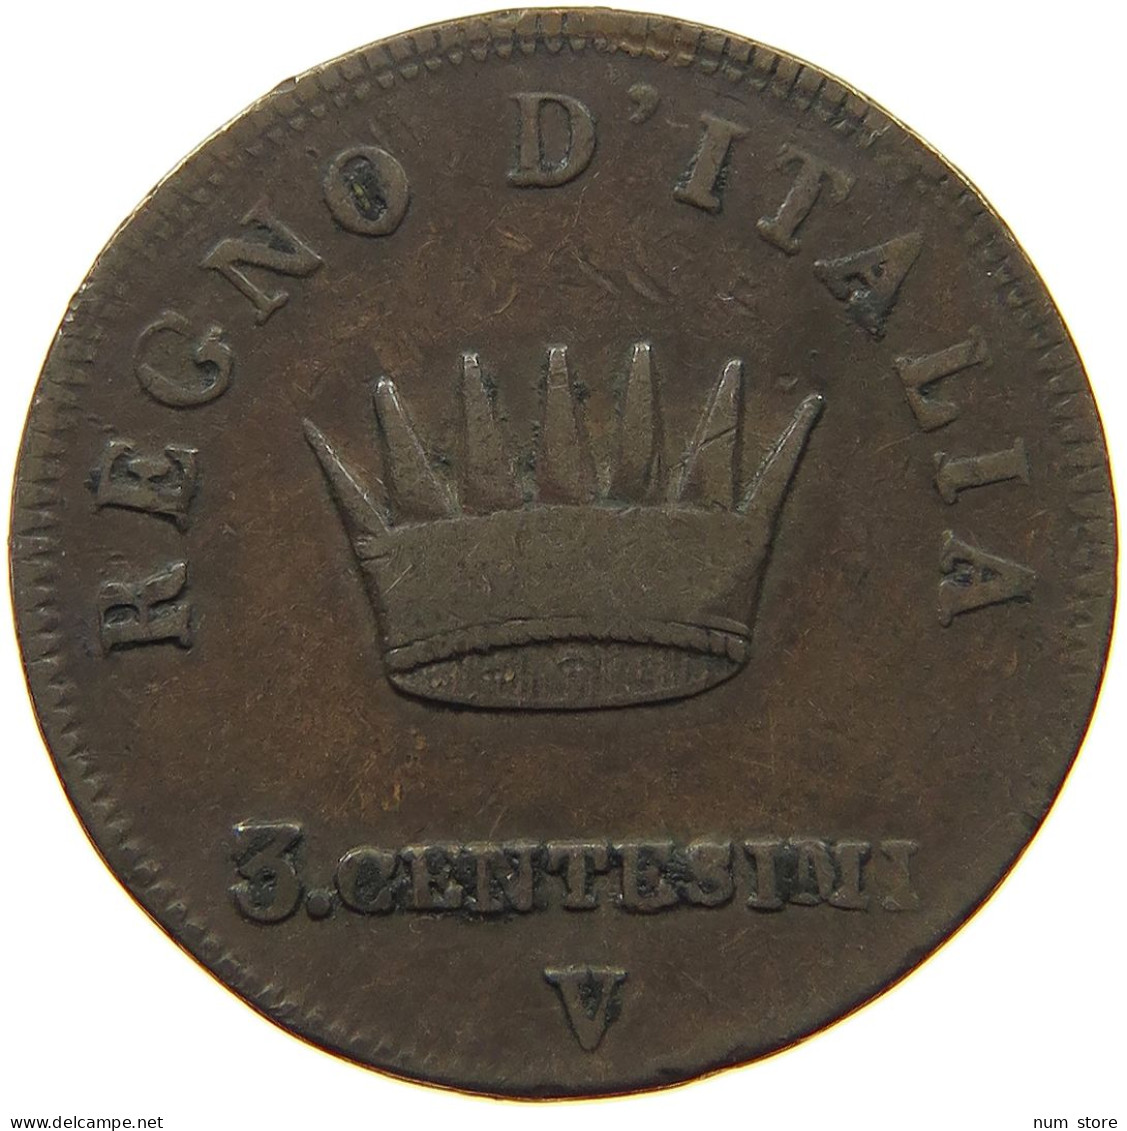 ITALY STATES NAPOLEON I. 3 CENTESIMI 1810 V Napoleon I. (1804-1814, 1815) #t144 0859 - Napoleonic